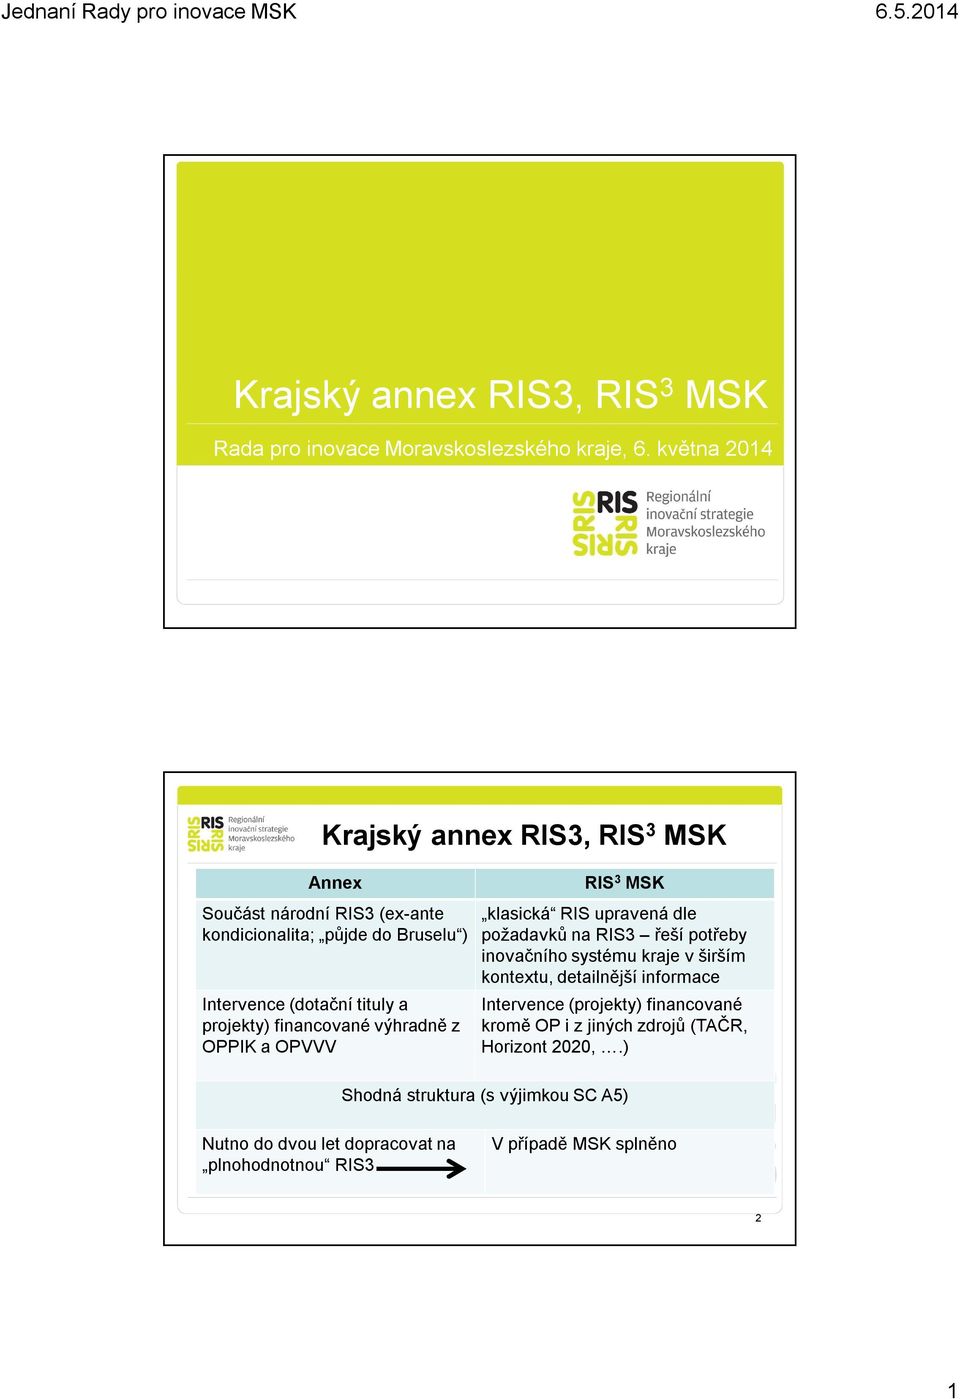 projekty) financované výhradně z OPPIK a OPVVV RIS 3 MSK klasická RIS upravená dle požadavků na RIS3 řeší potřeby inovačního systému kraje v širším